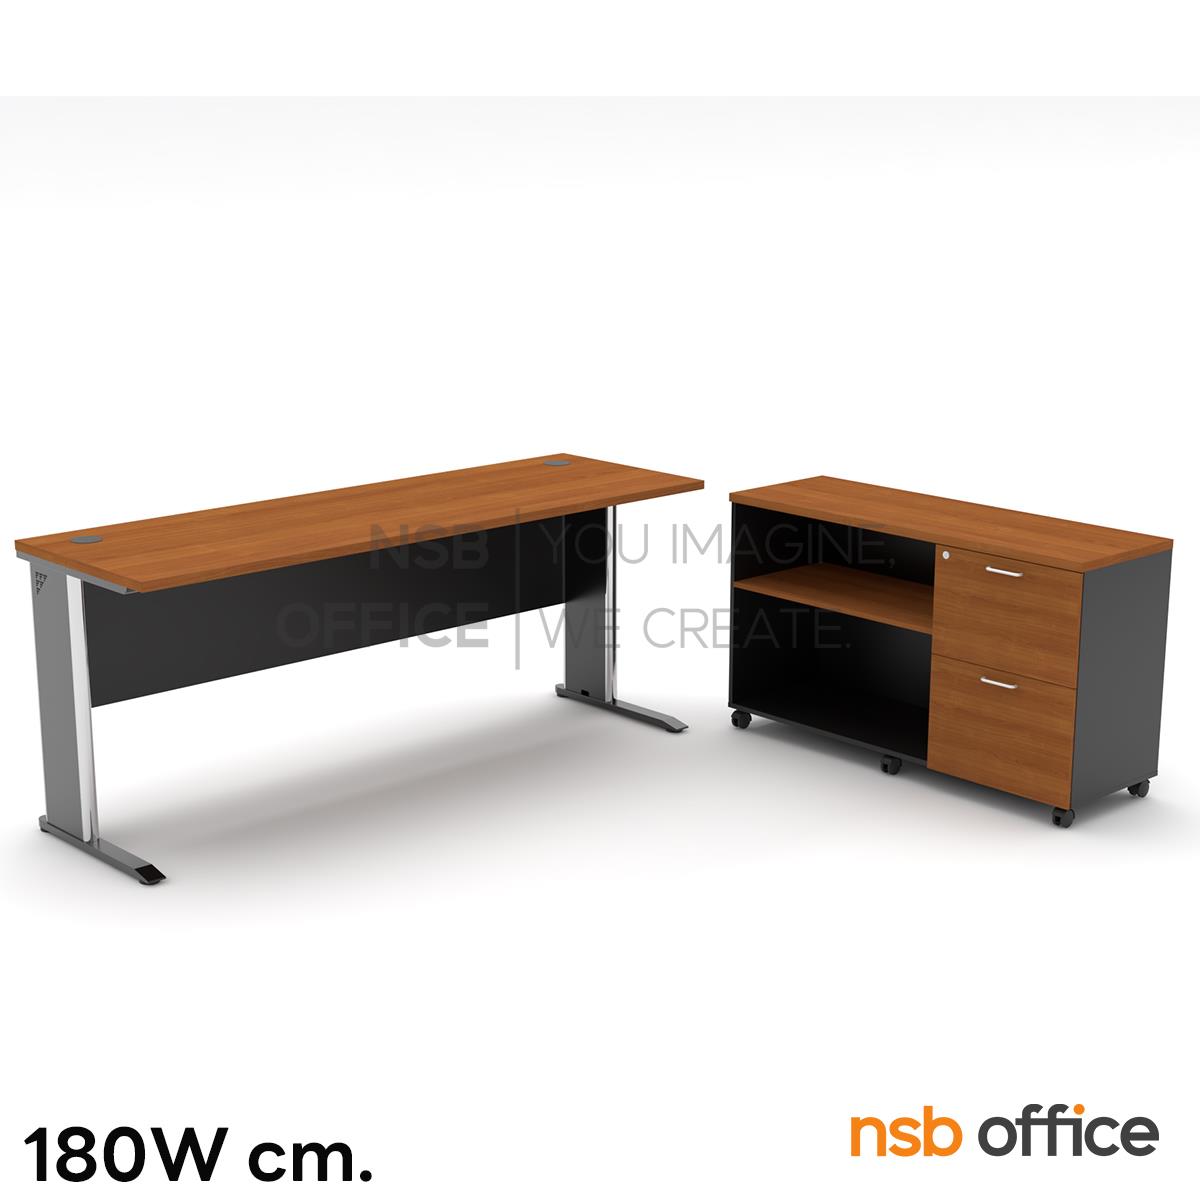 โต๊ะทำงาน รุ่น Dornez (โดเนซ) ขนาด 150W ,180W cm. พร้อมตู้ข้างล้อเลื่อน